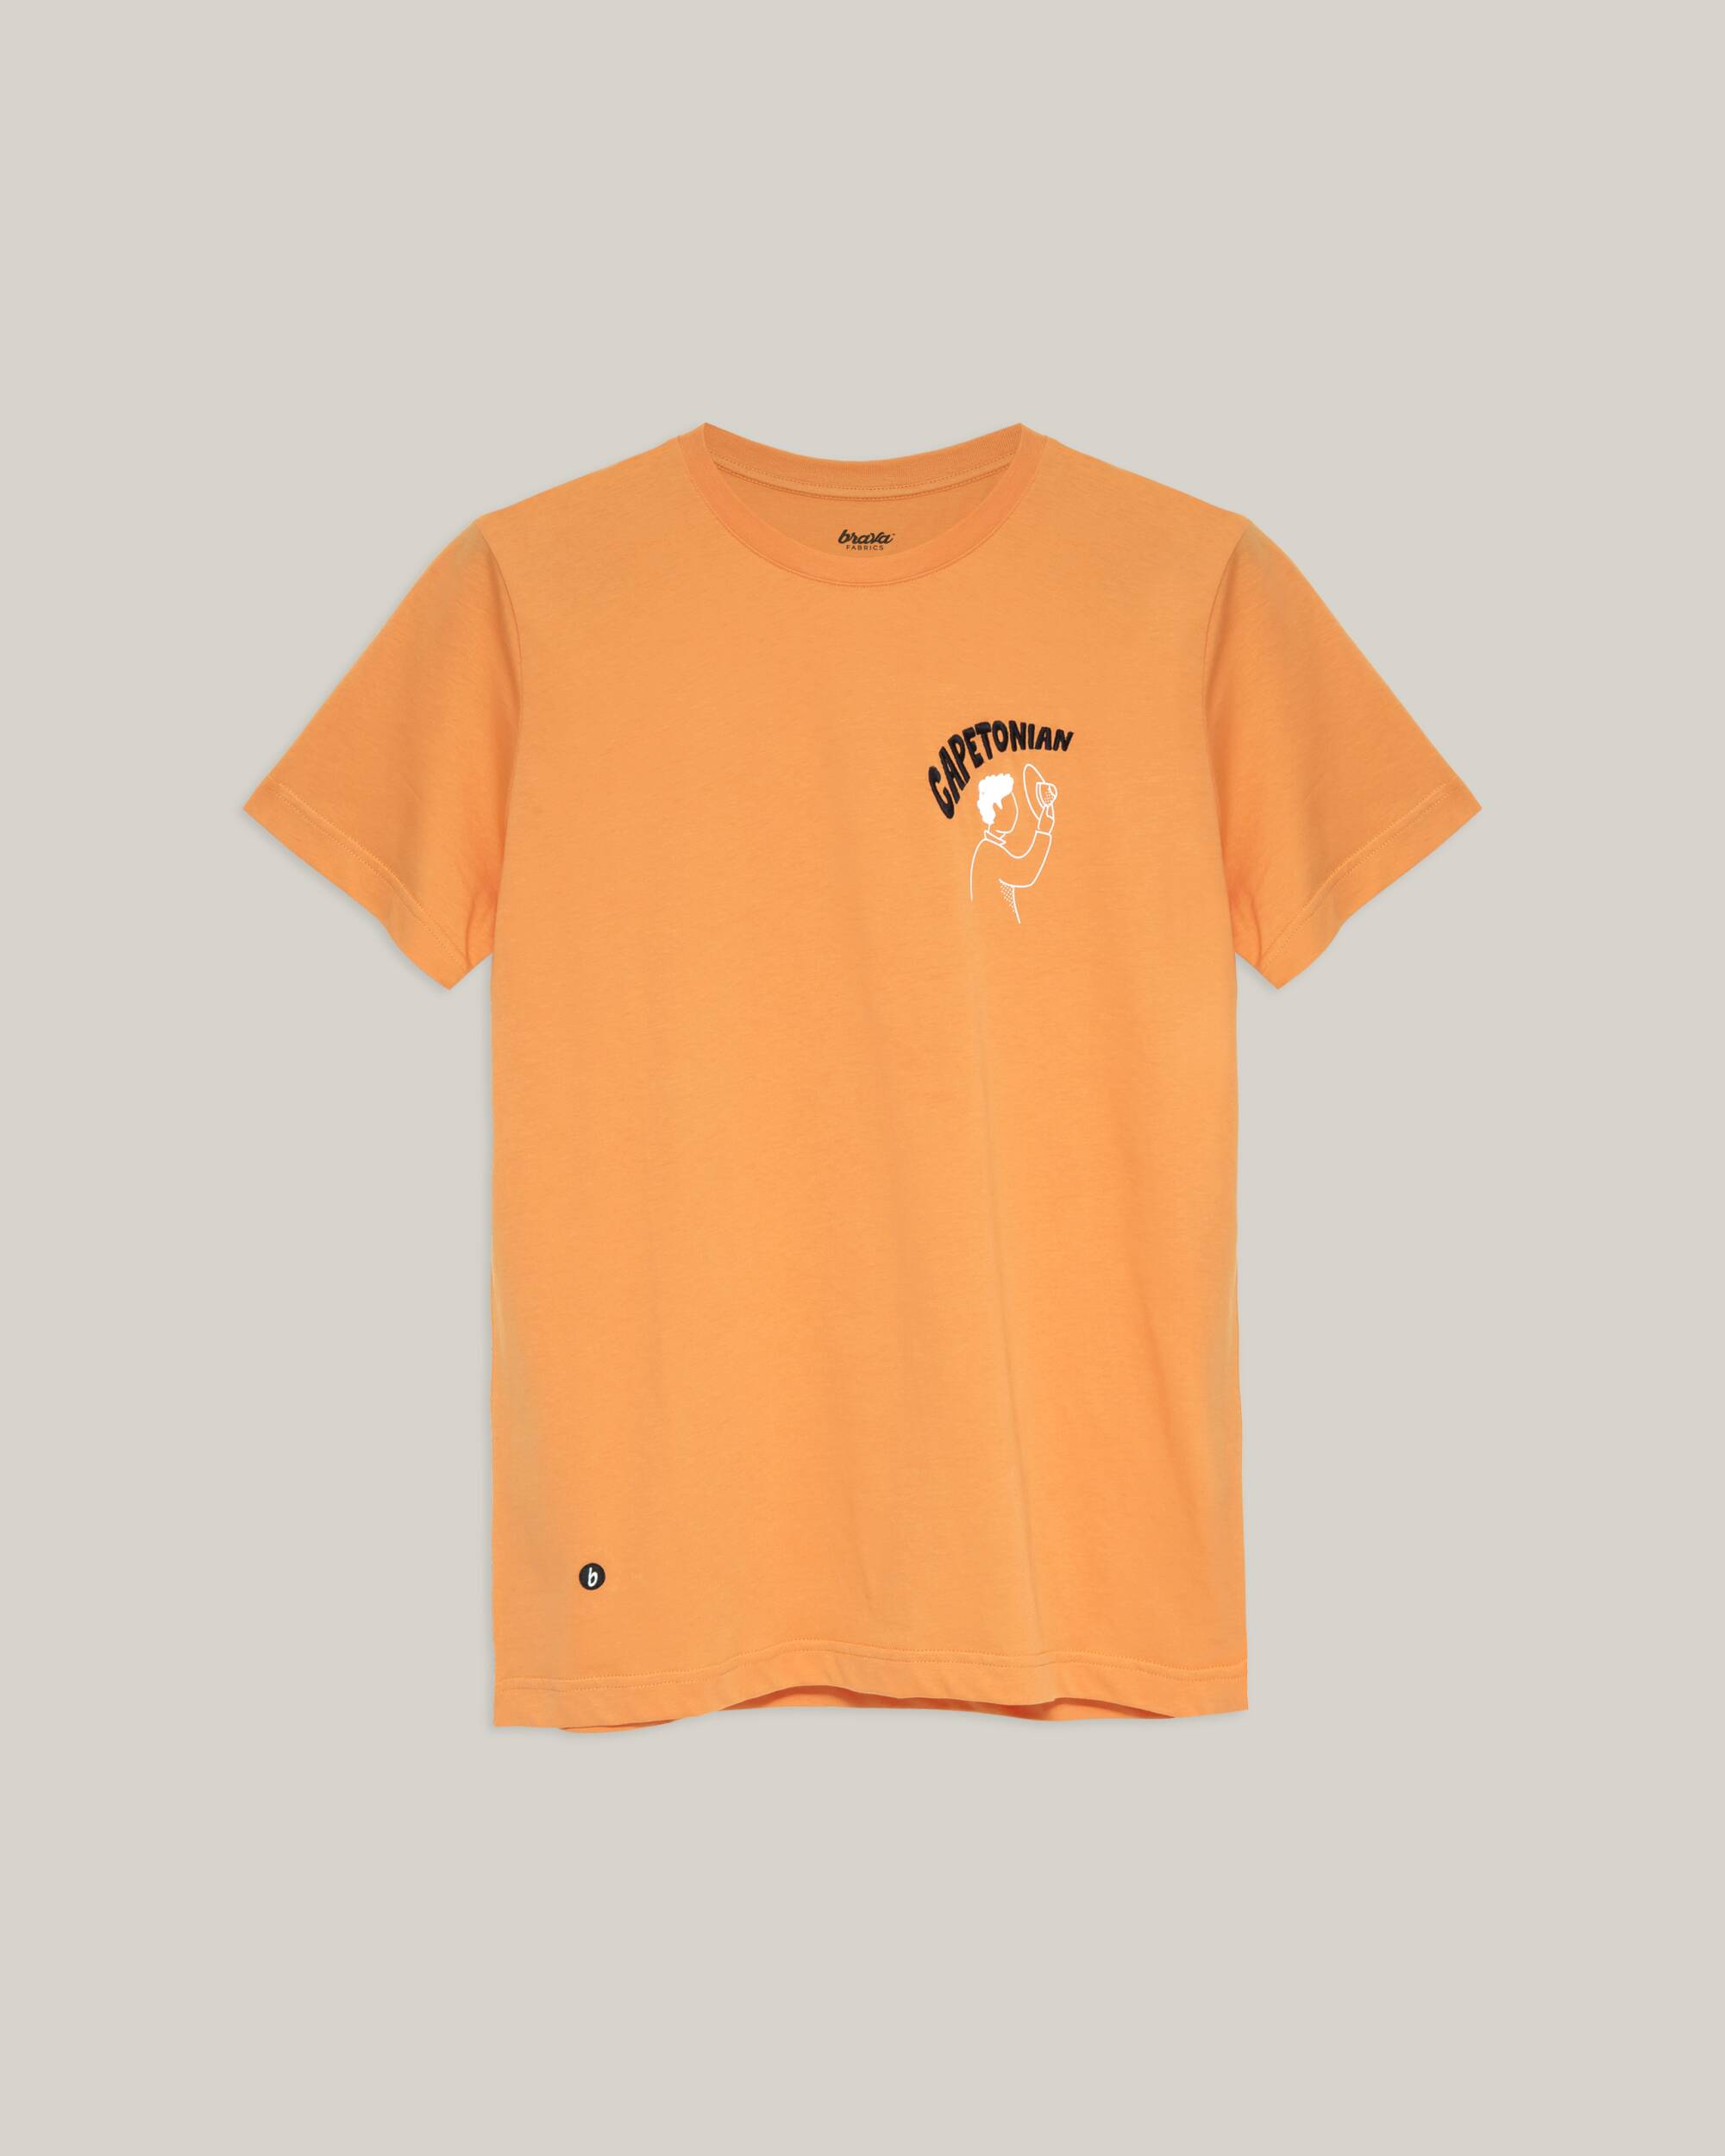 T-shirt "Capetonian" en orange en coton 100% biologique de Brava Fabrics